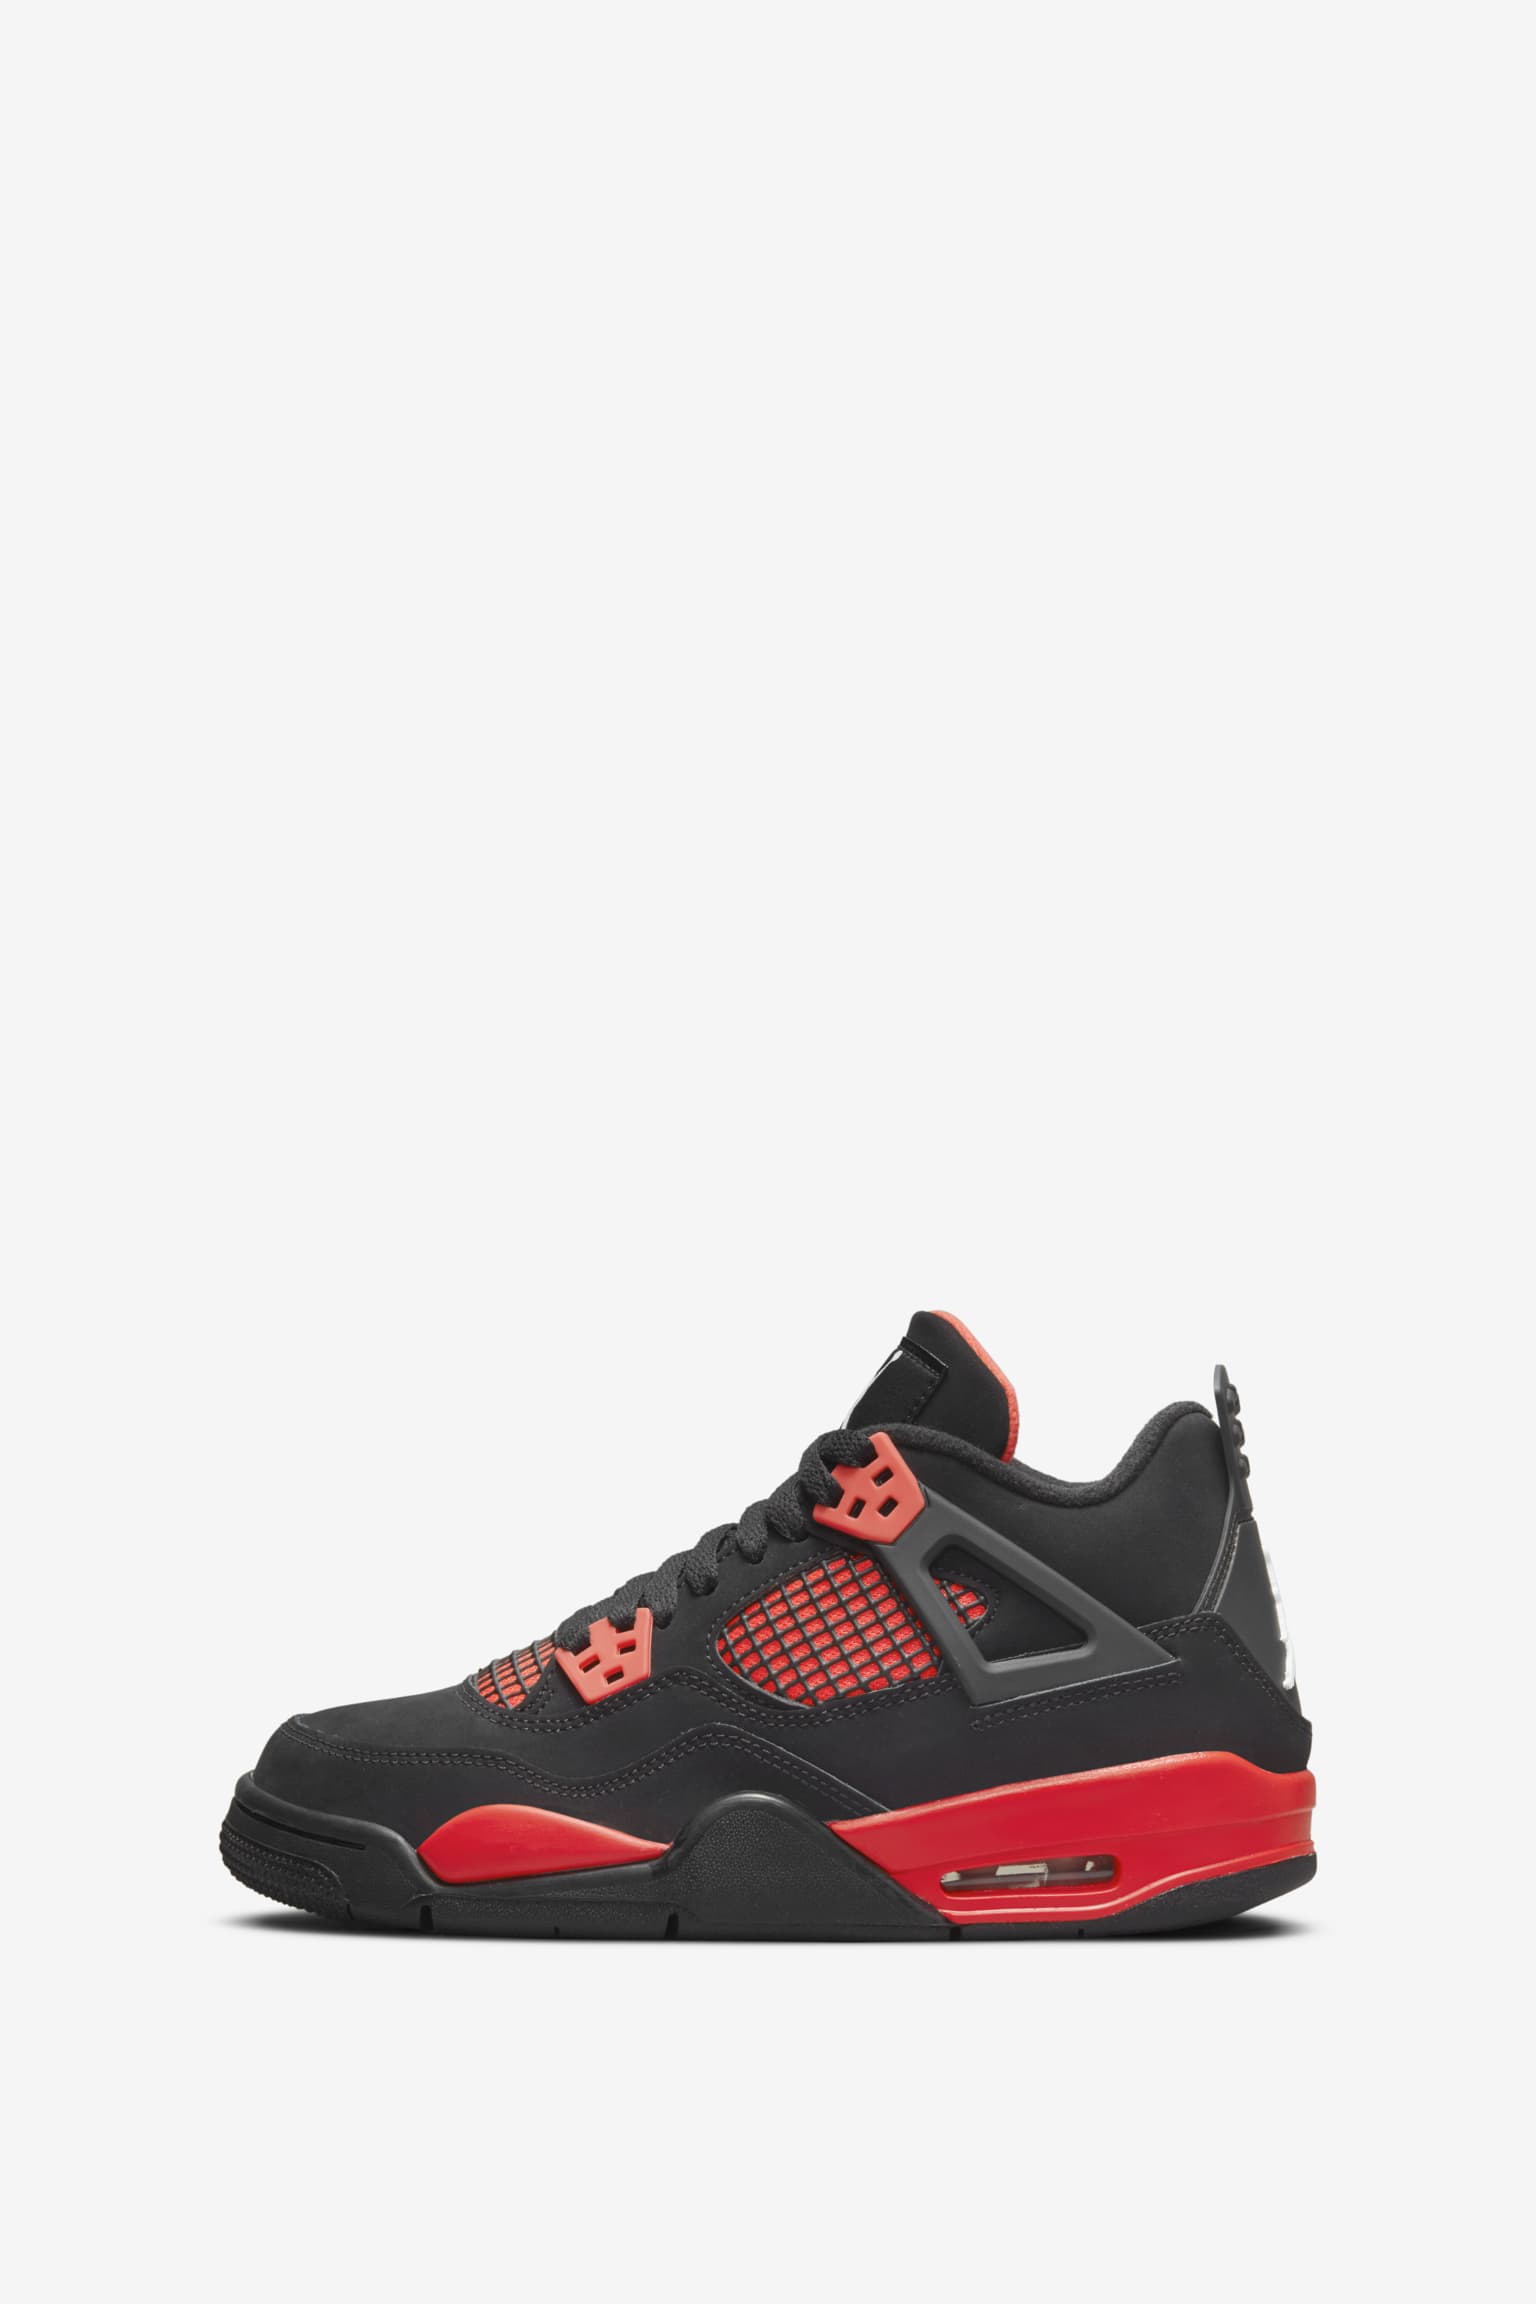 Jordan 4 'Crimson' (CT8527-016) Date. Nike